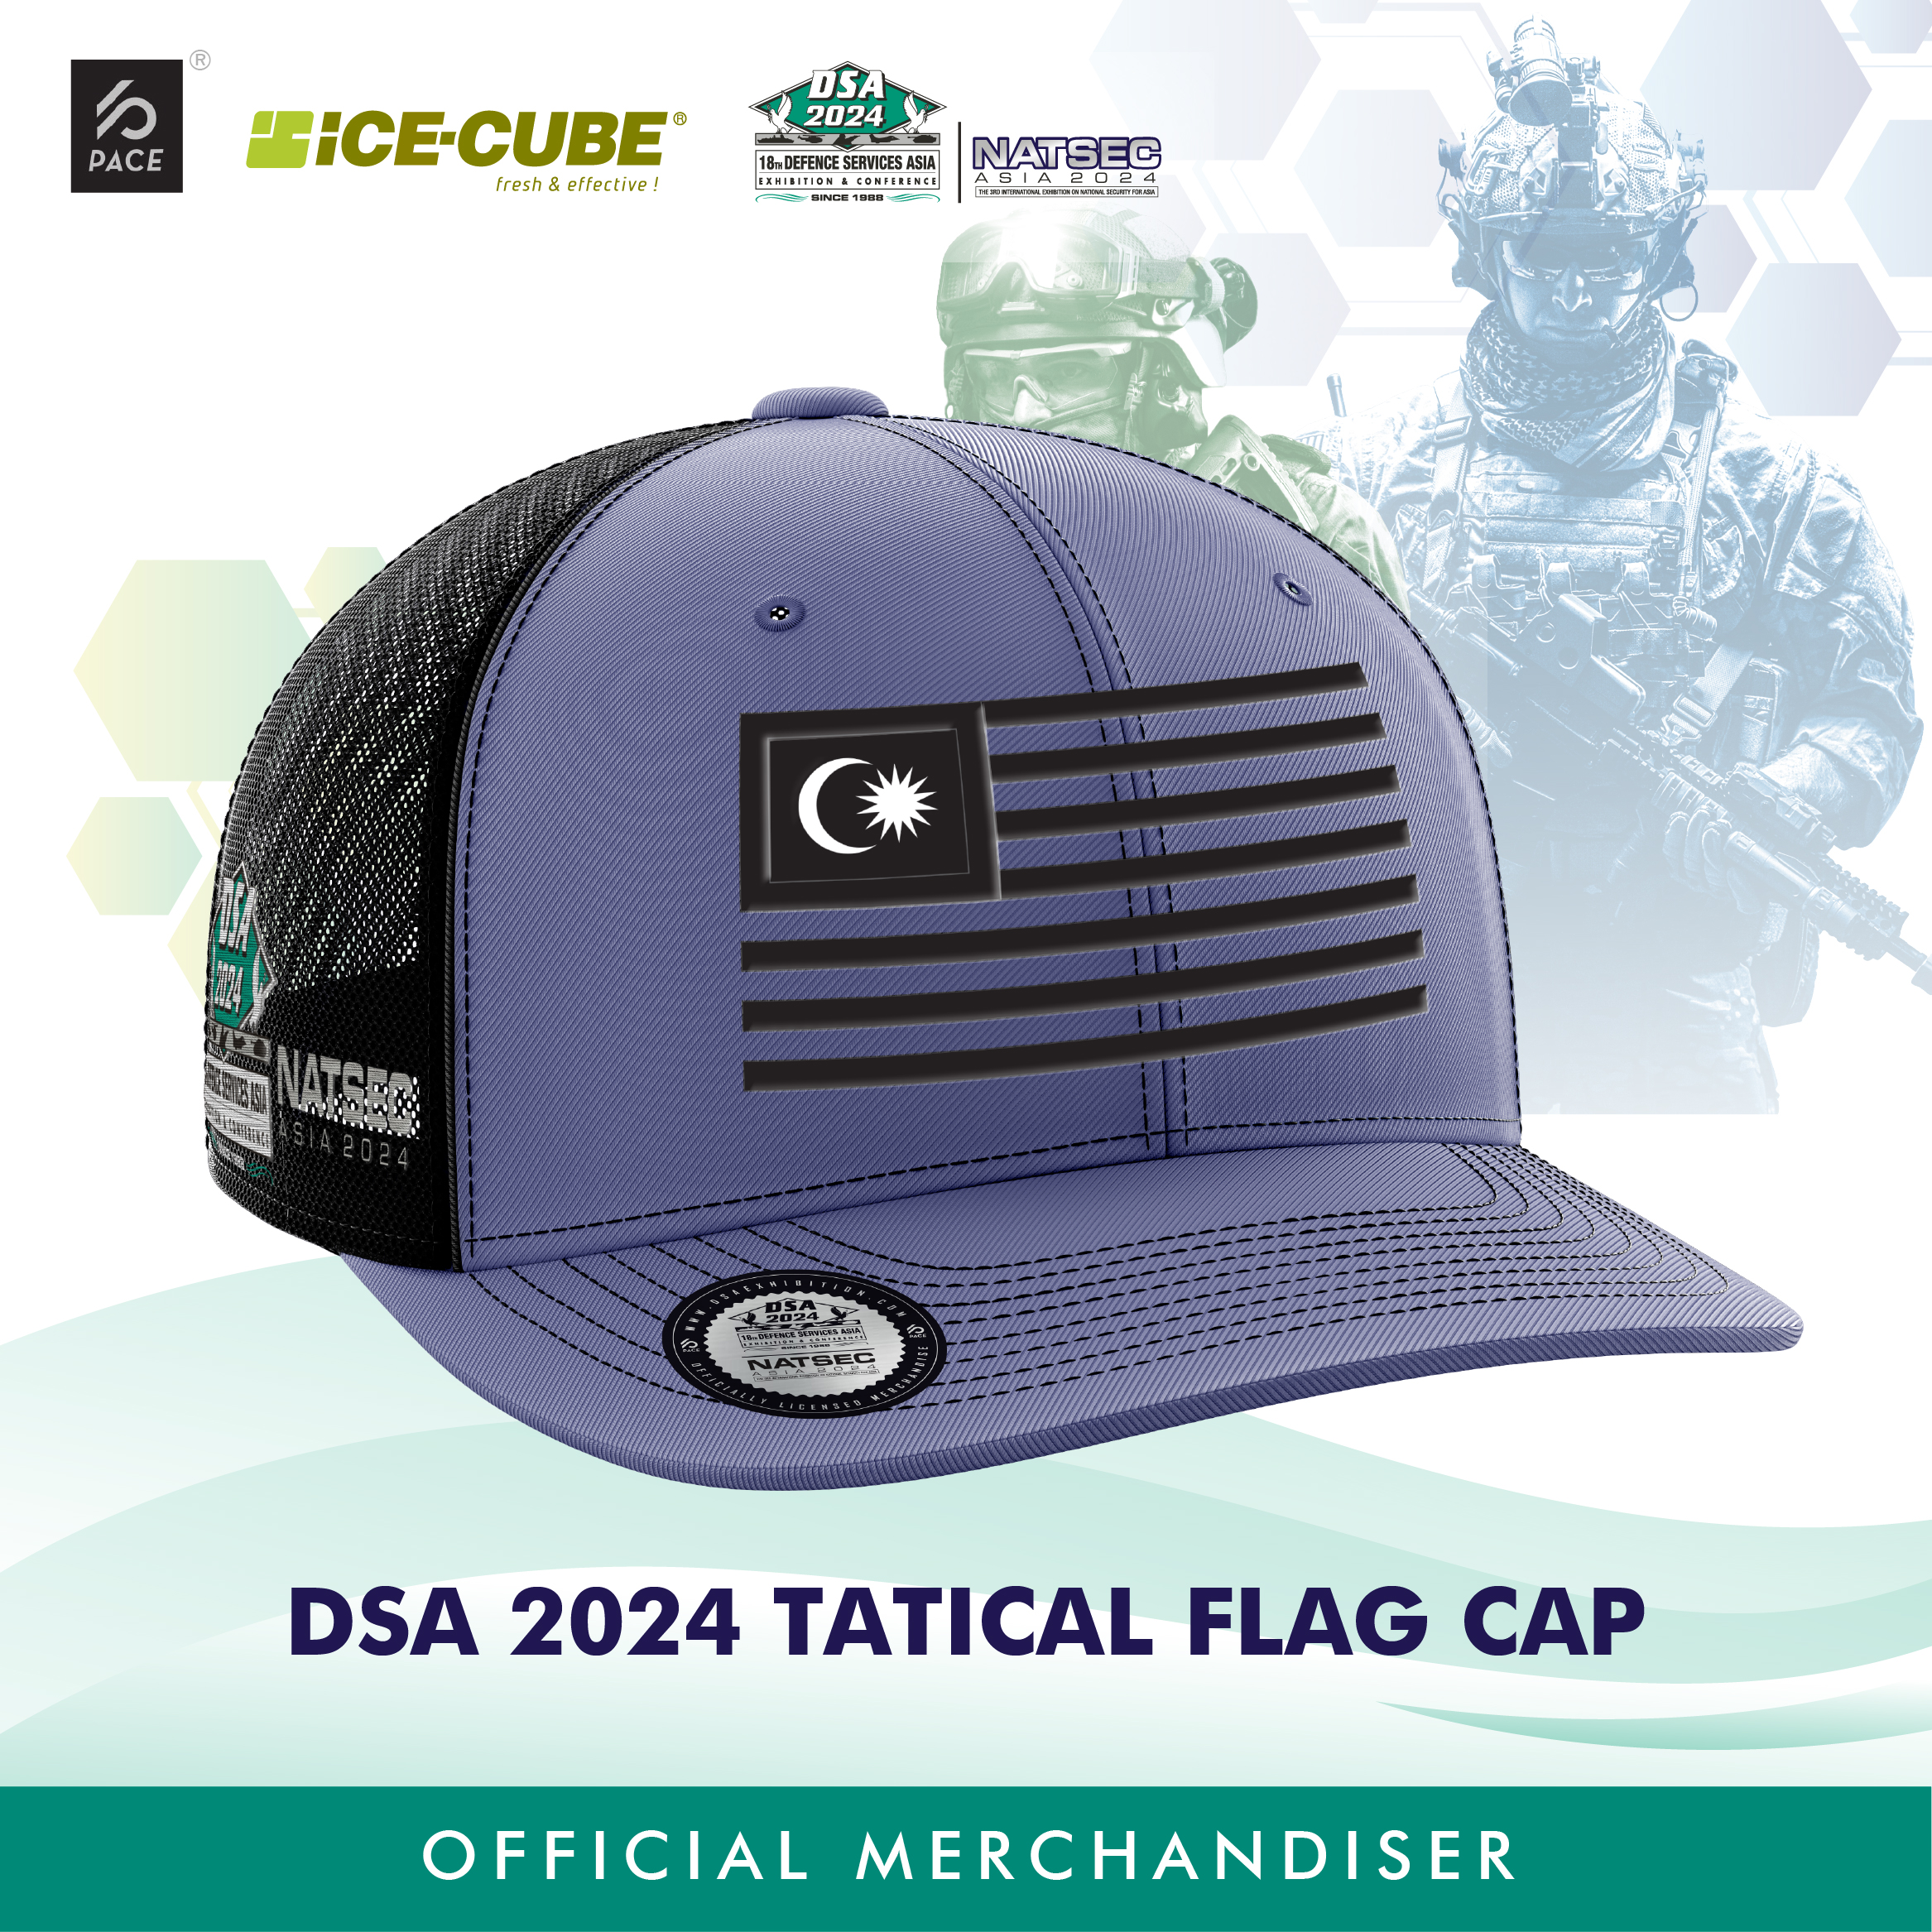 DSA 2024 Tactical Flag Cap